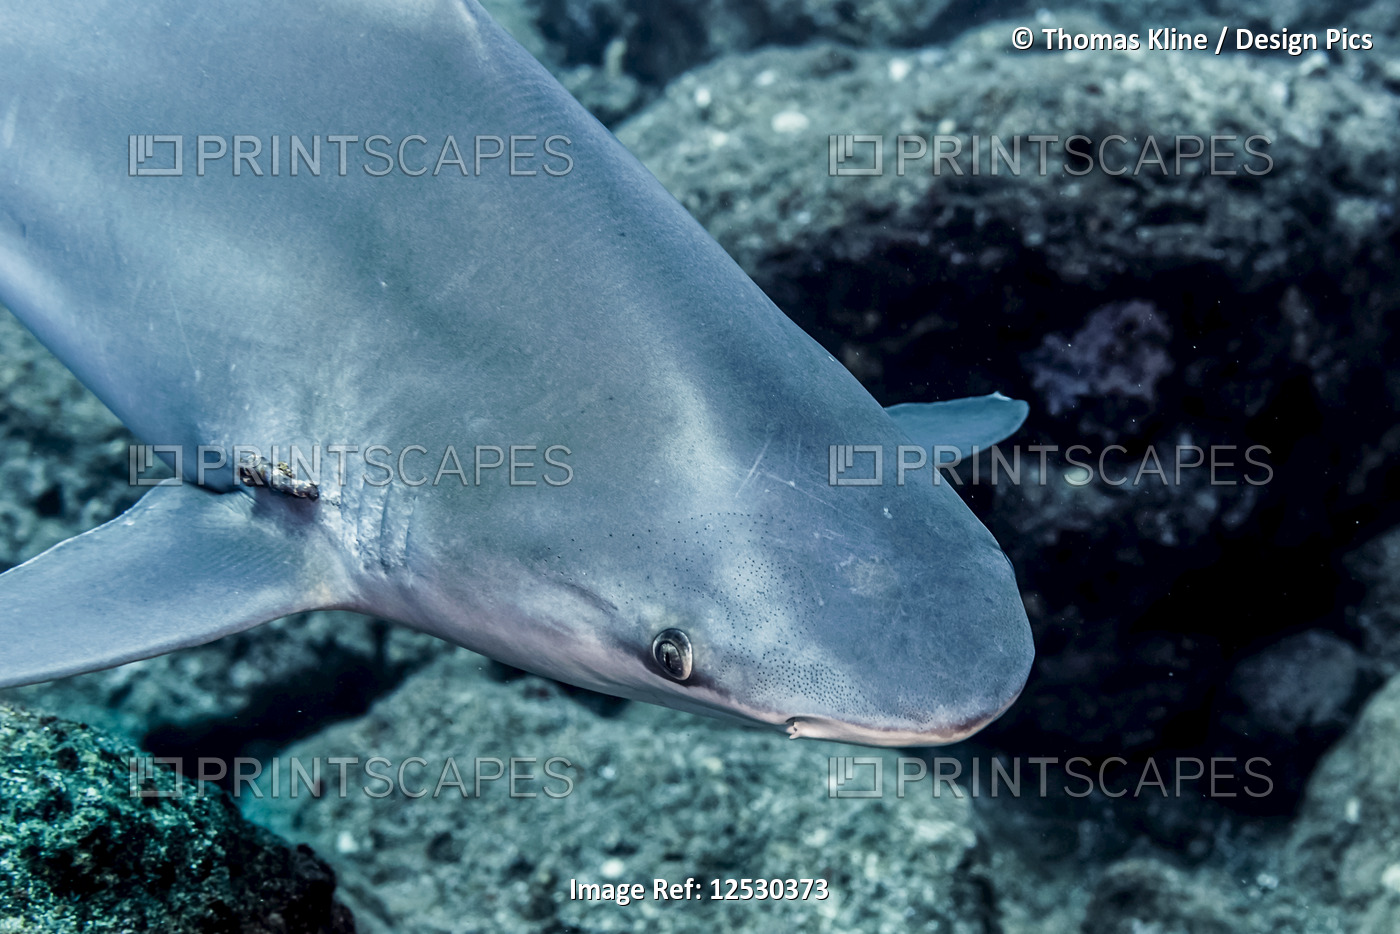 Sandbar Shark with parasites near gill slits